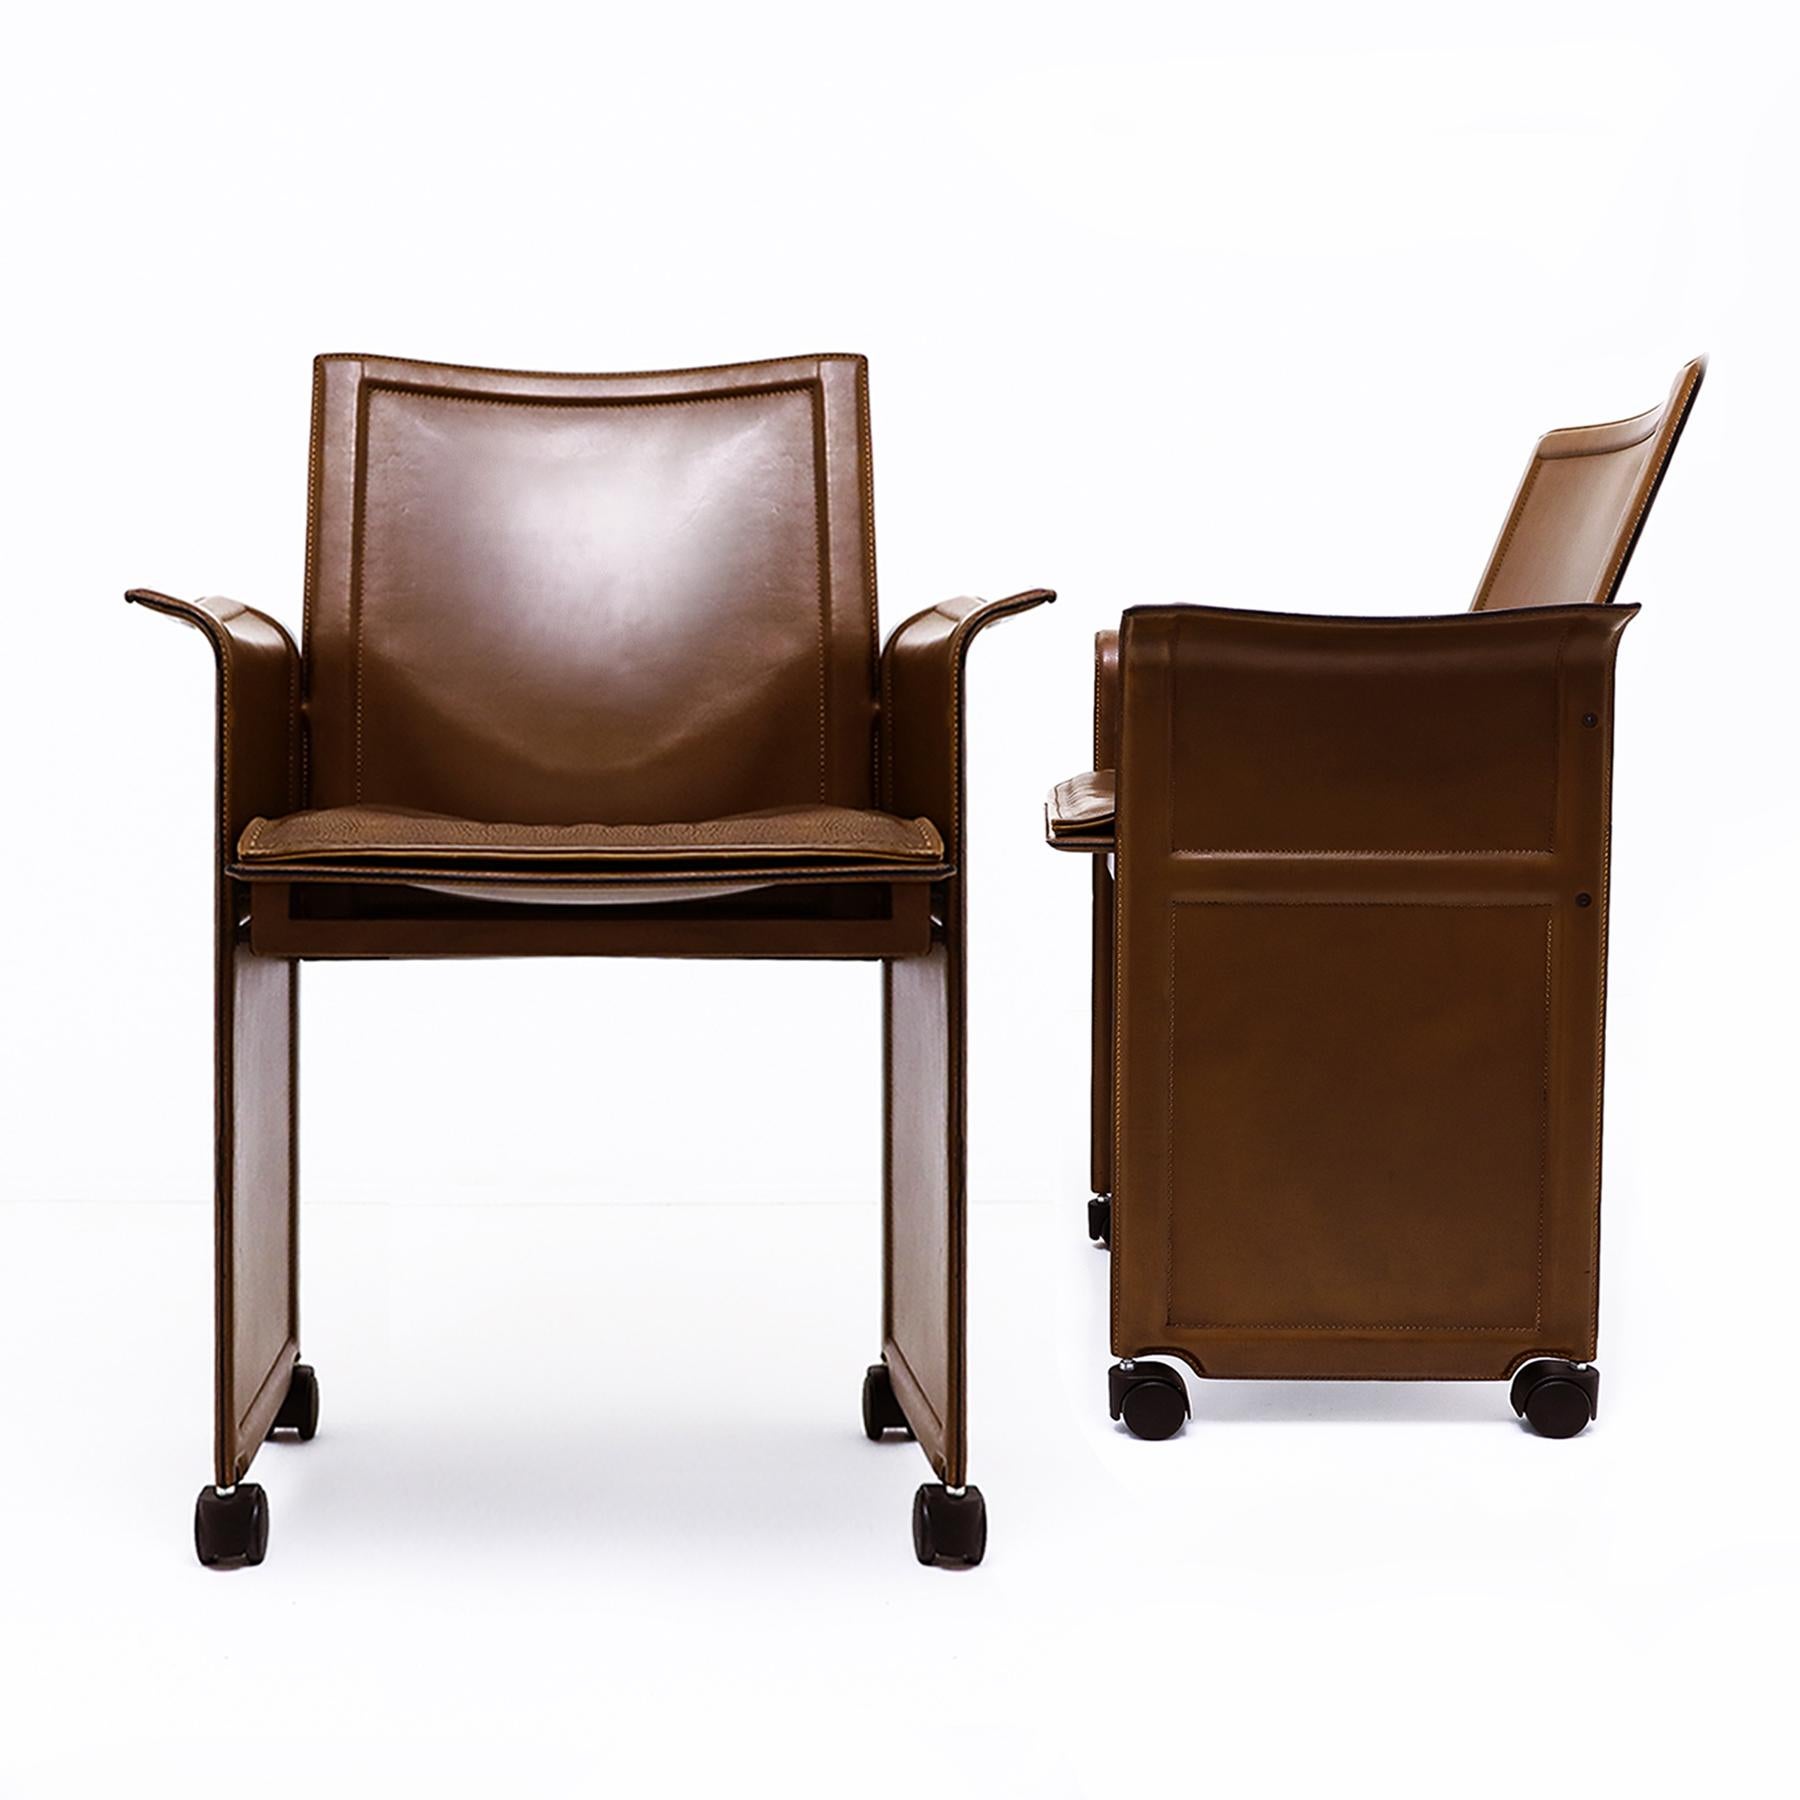 Paire de fauteuils vintage italiens Korium en cuir brun avec une structure en acier sur roulettes noires, conçus par Tito Agnoli pour Matteo Grassi, années 1980 - le prix est pour les deux fauteuils.

Cette paire de chaises date des années 1980 et